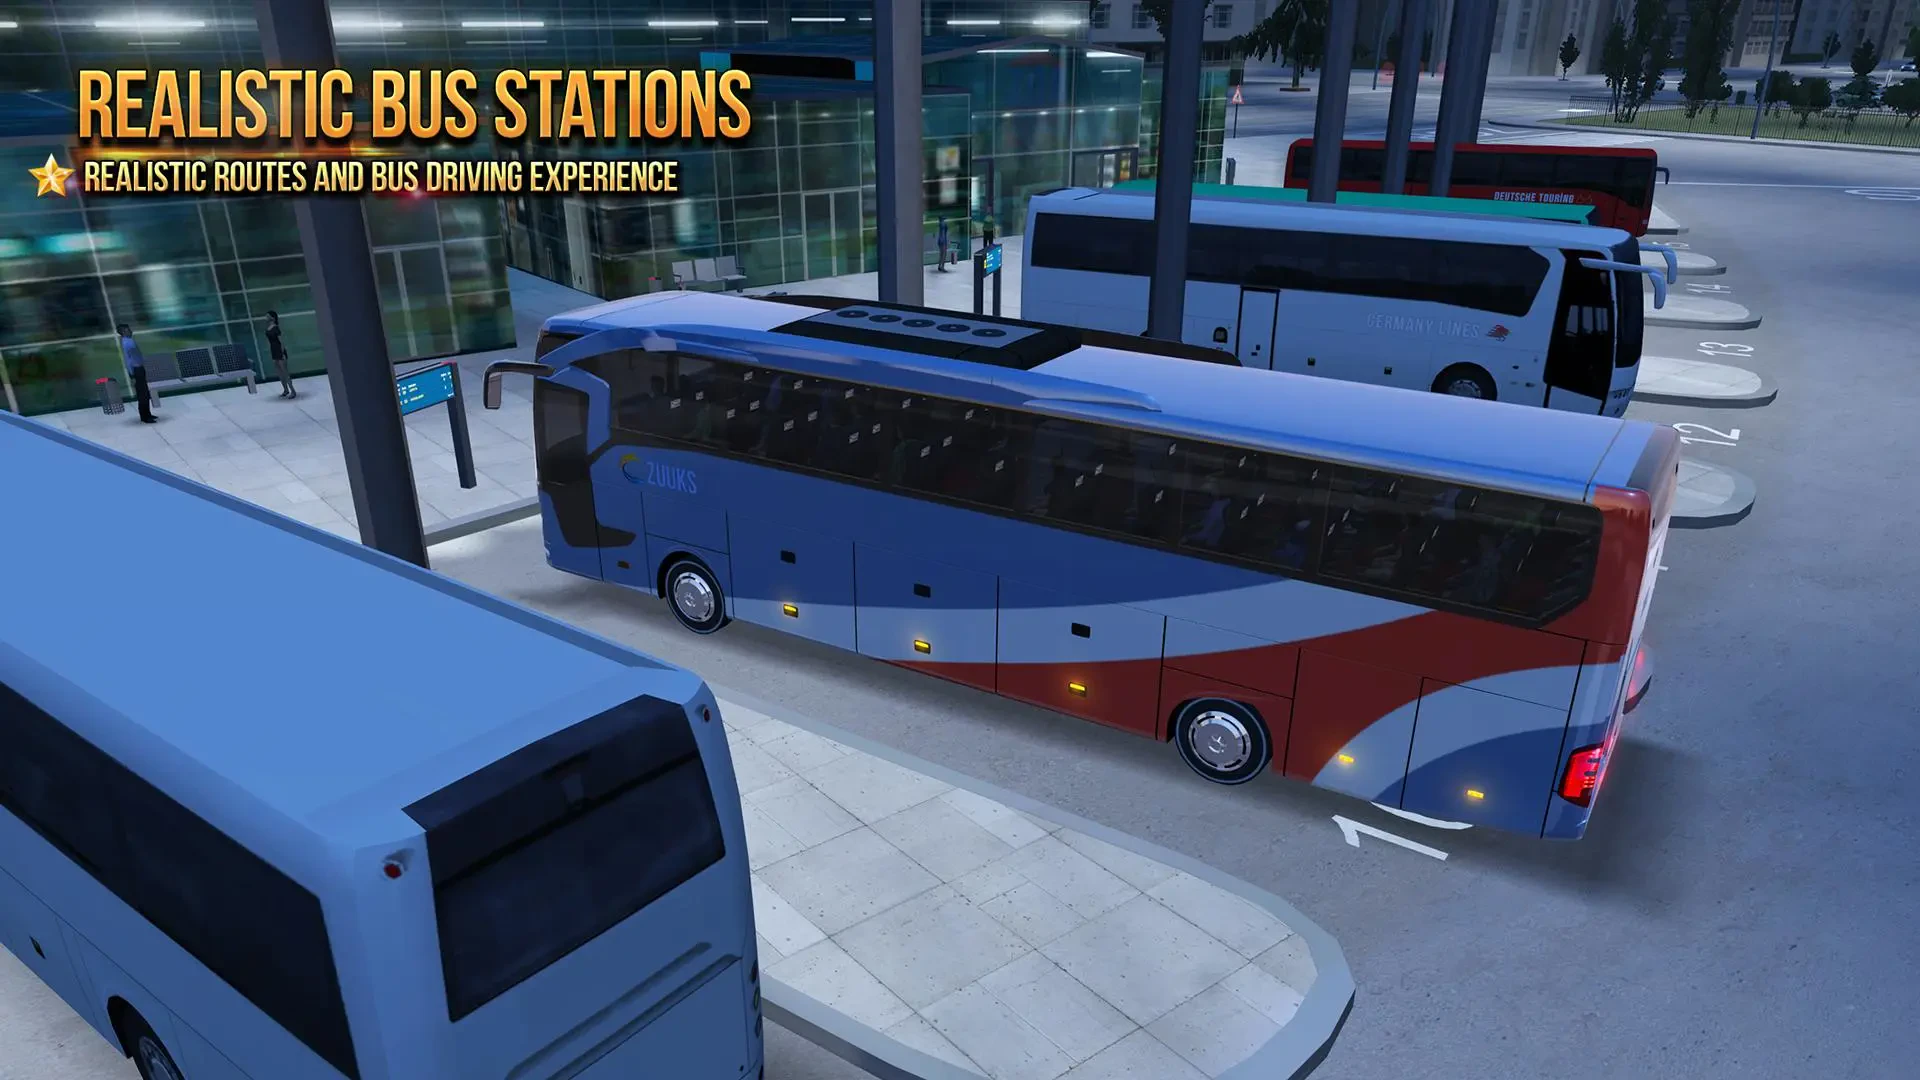 Bus Simulator 2019 APK para Android - Download